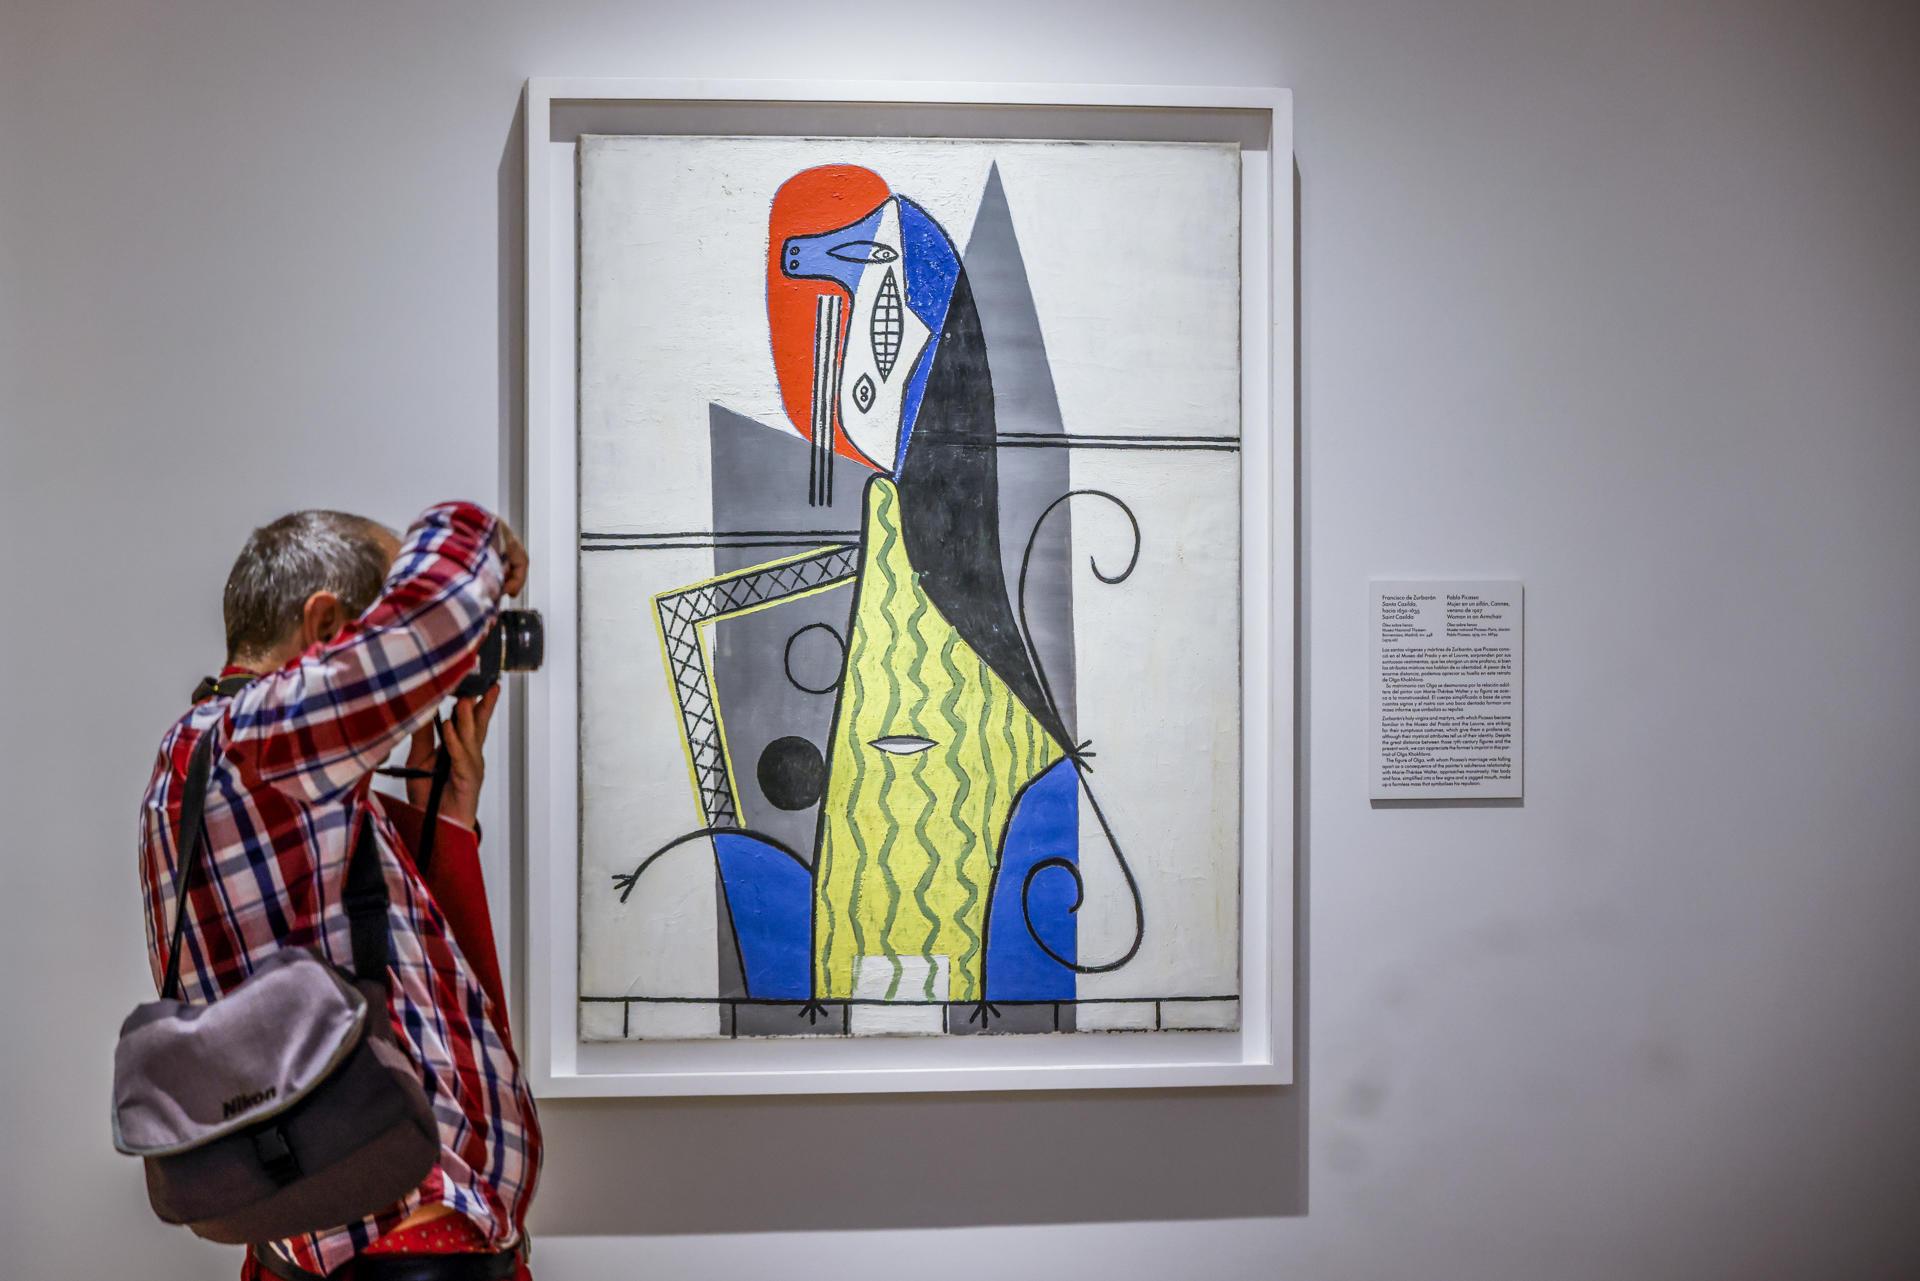 Exposición "Picasso, lo sagrado y lo profano".